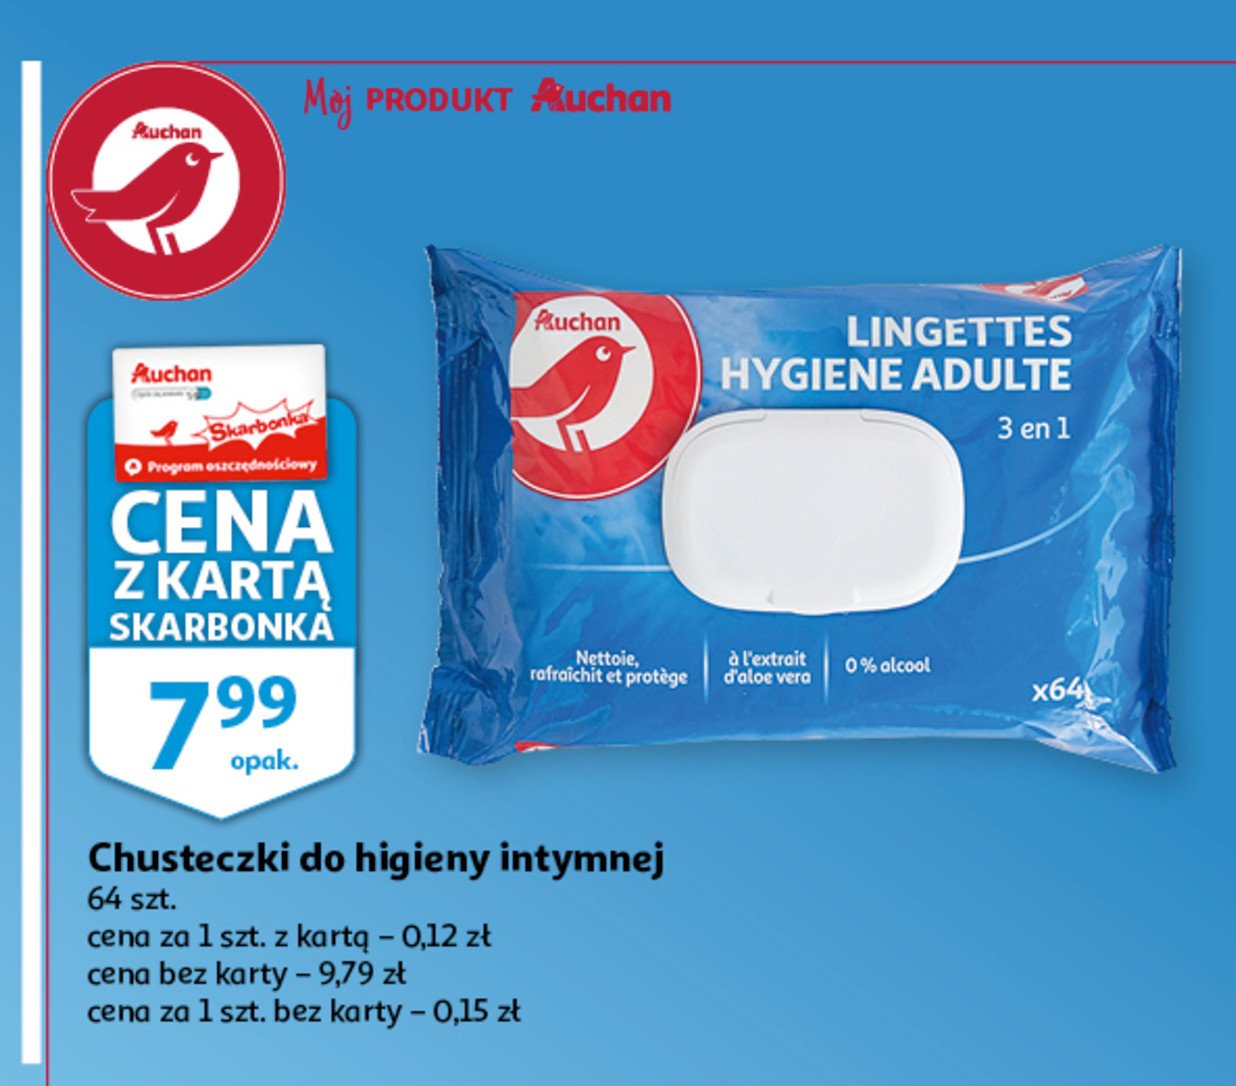 Chusteczki do higieny intymnej Auchan różnorodne (logo czerwone) promocja